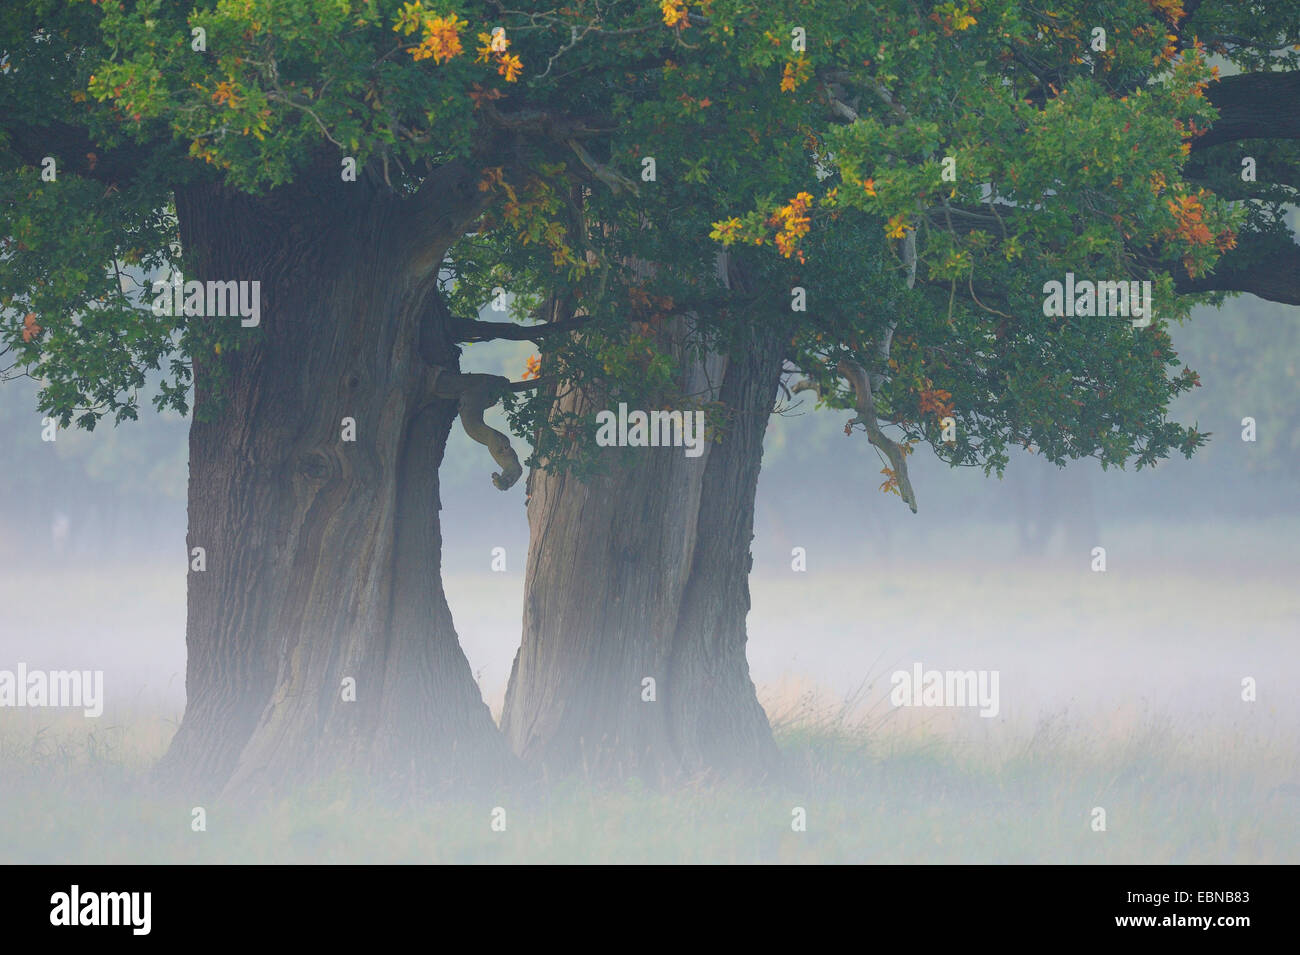 Le chêne commun, le chêne pédonculé, chêne pédonculé (Quercus robur), Mystic misty ambiance avec plusieurs ans hunders Oaks, Danemark Banque D'Images